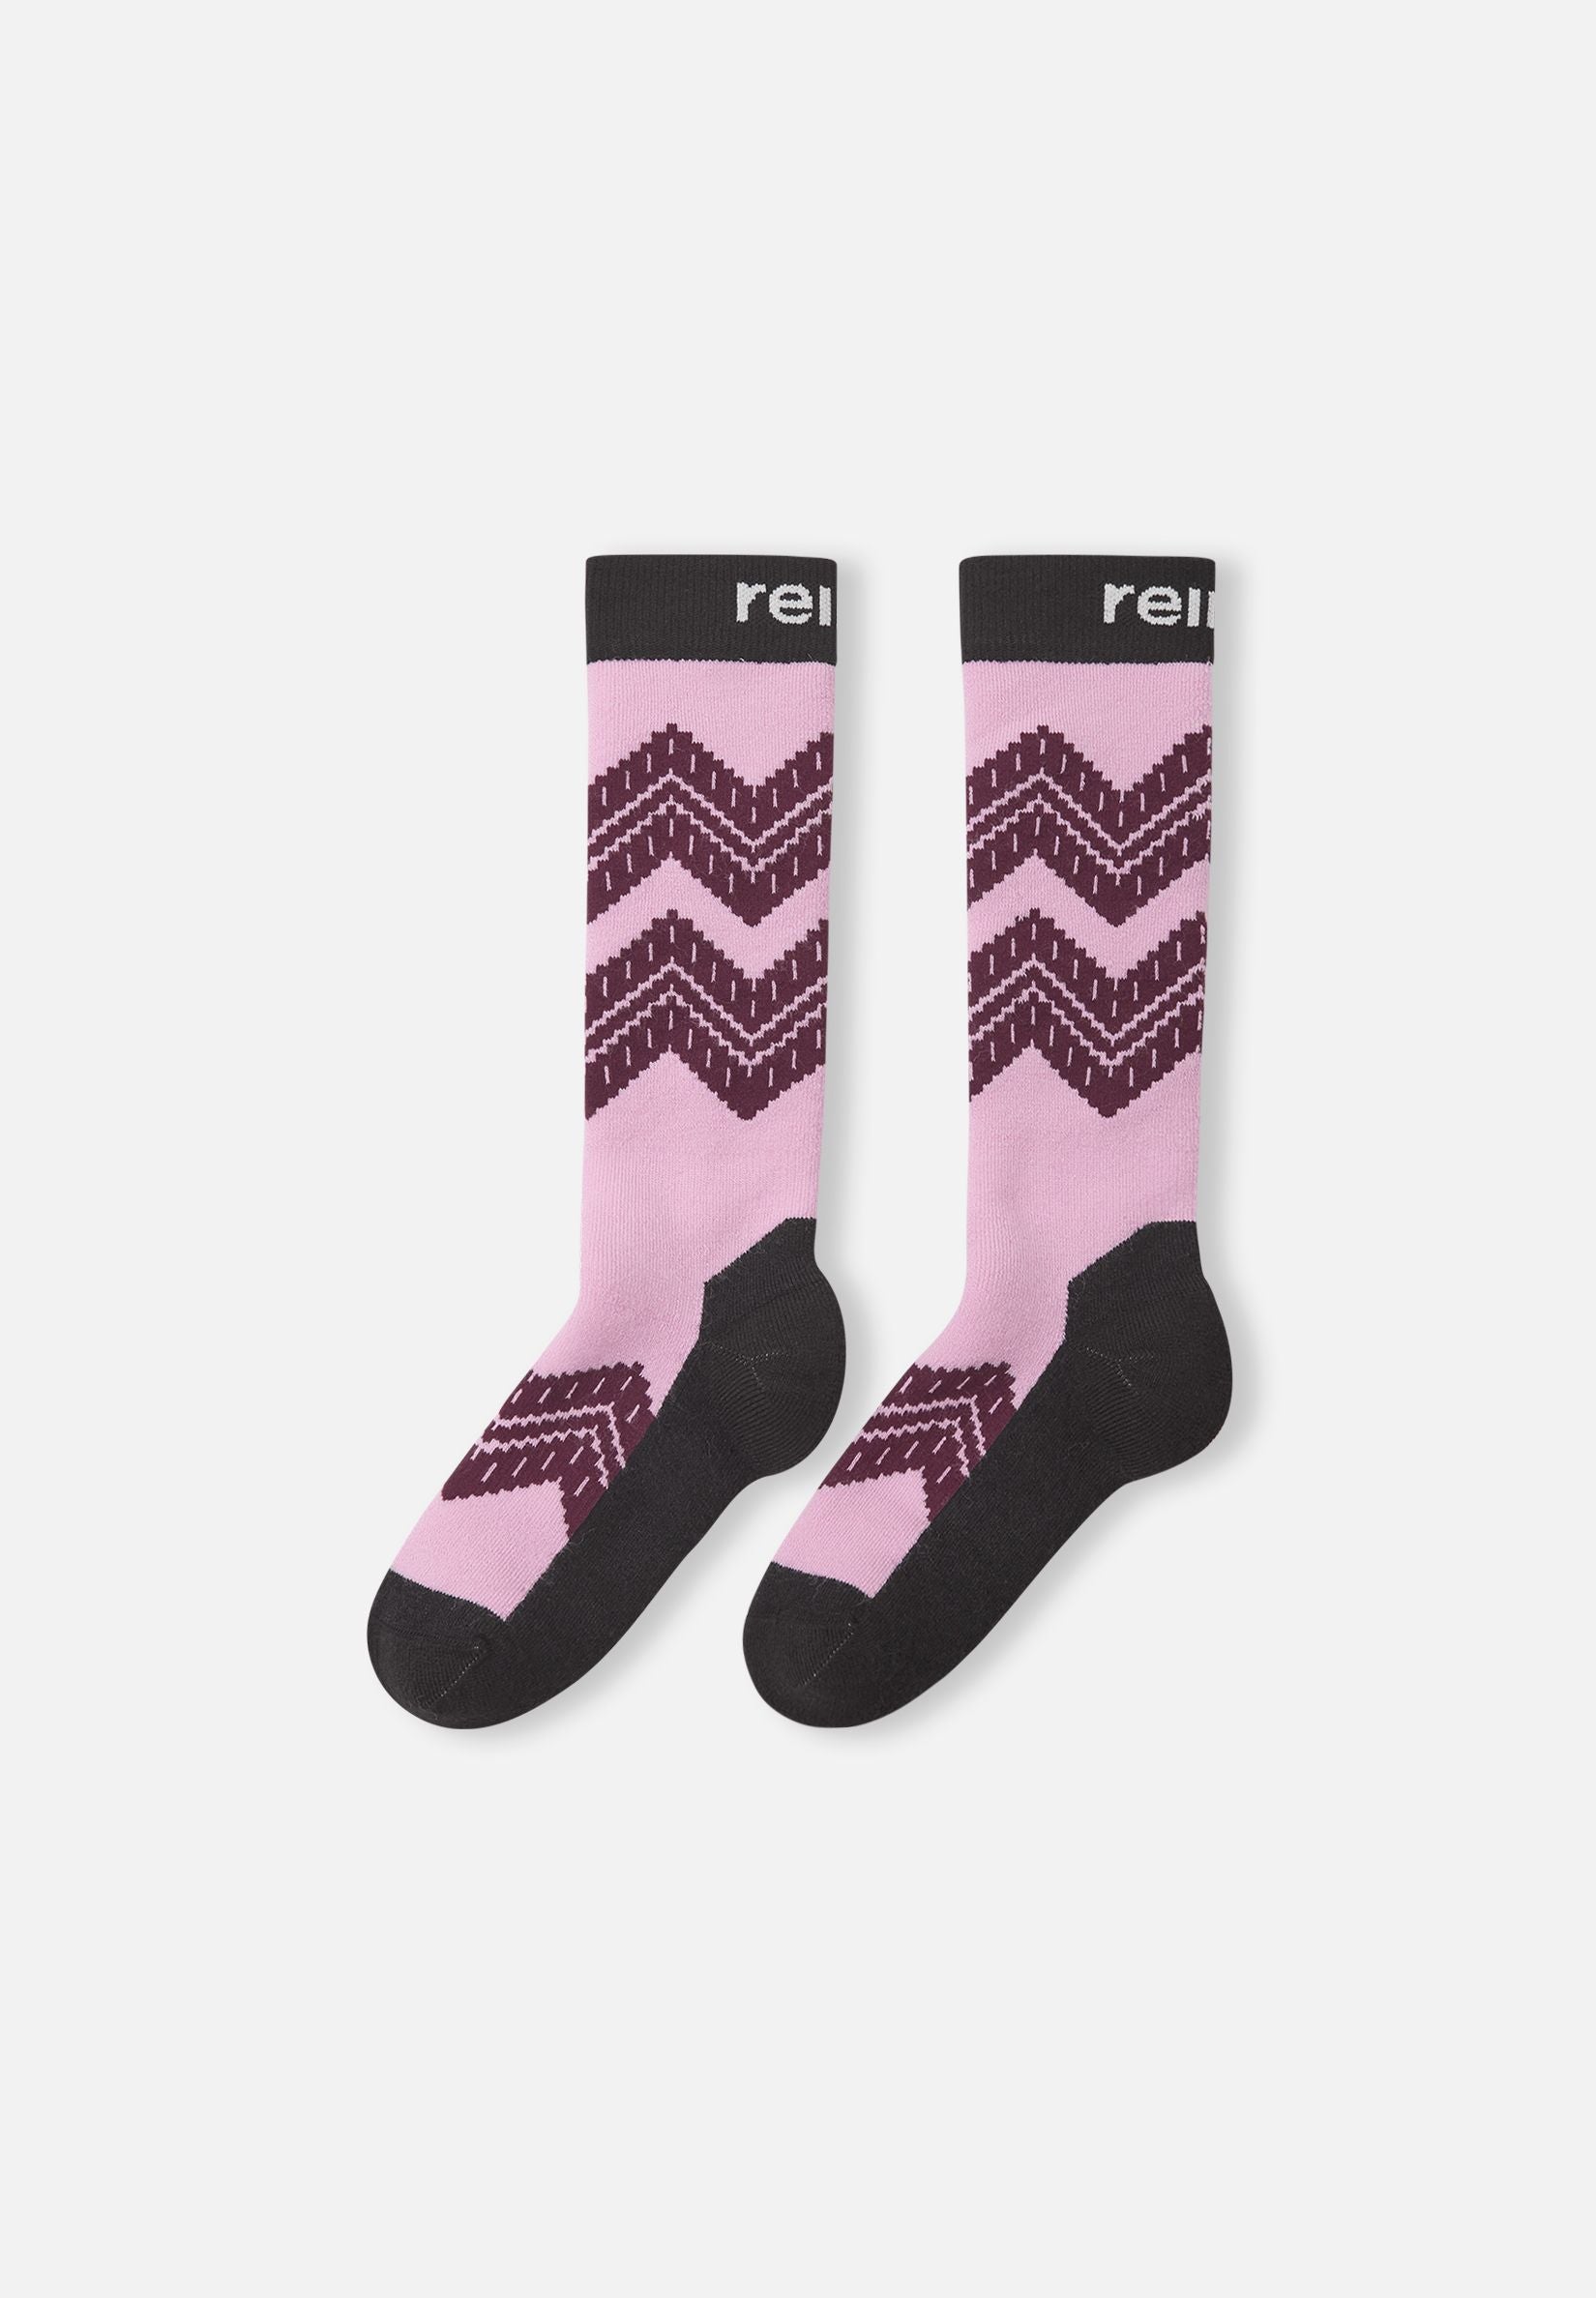 Reima - Suksee socks